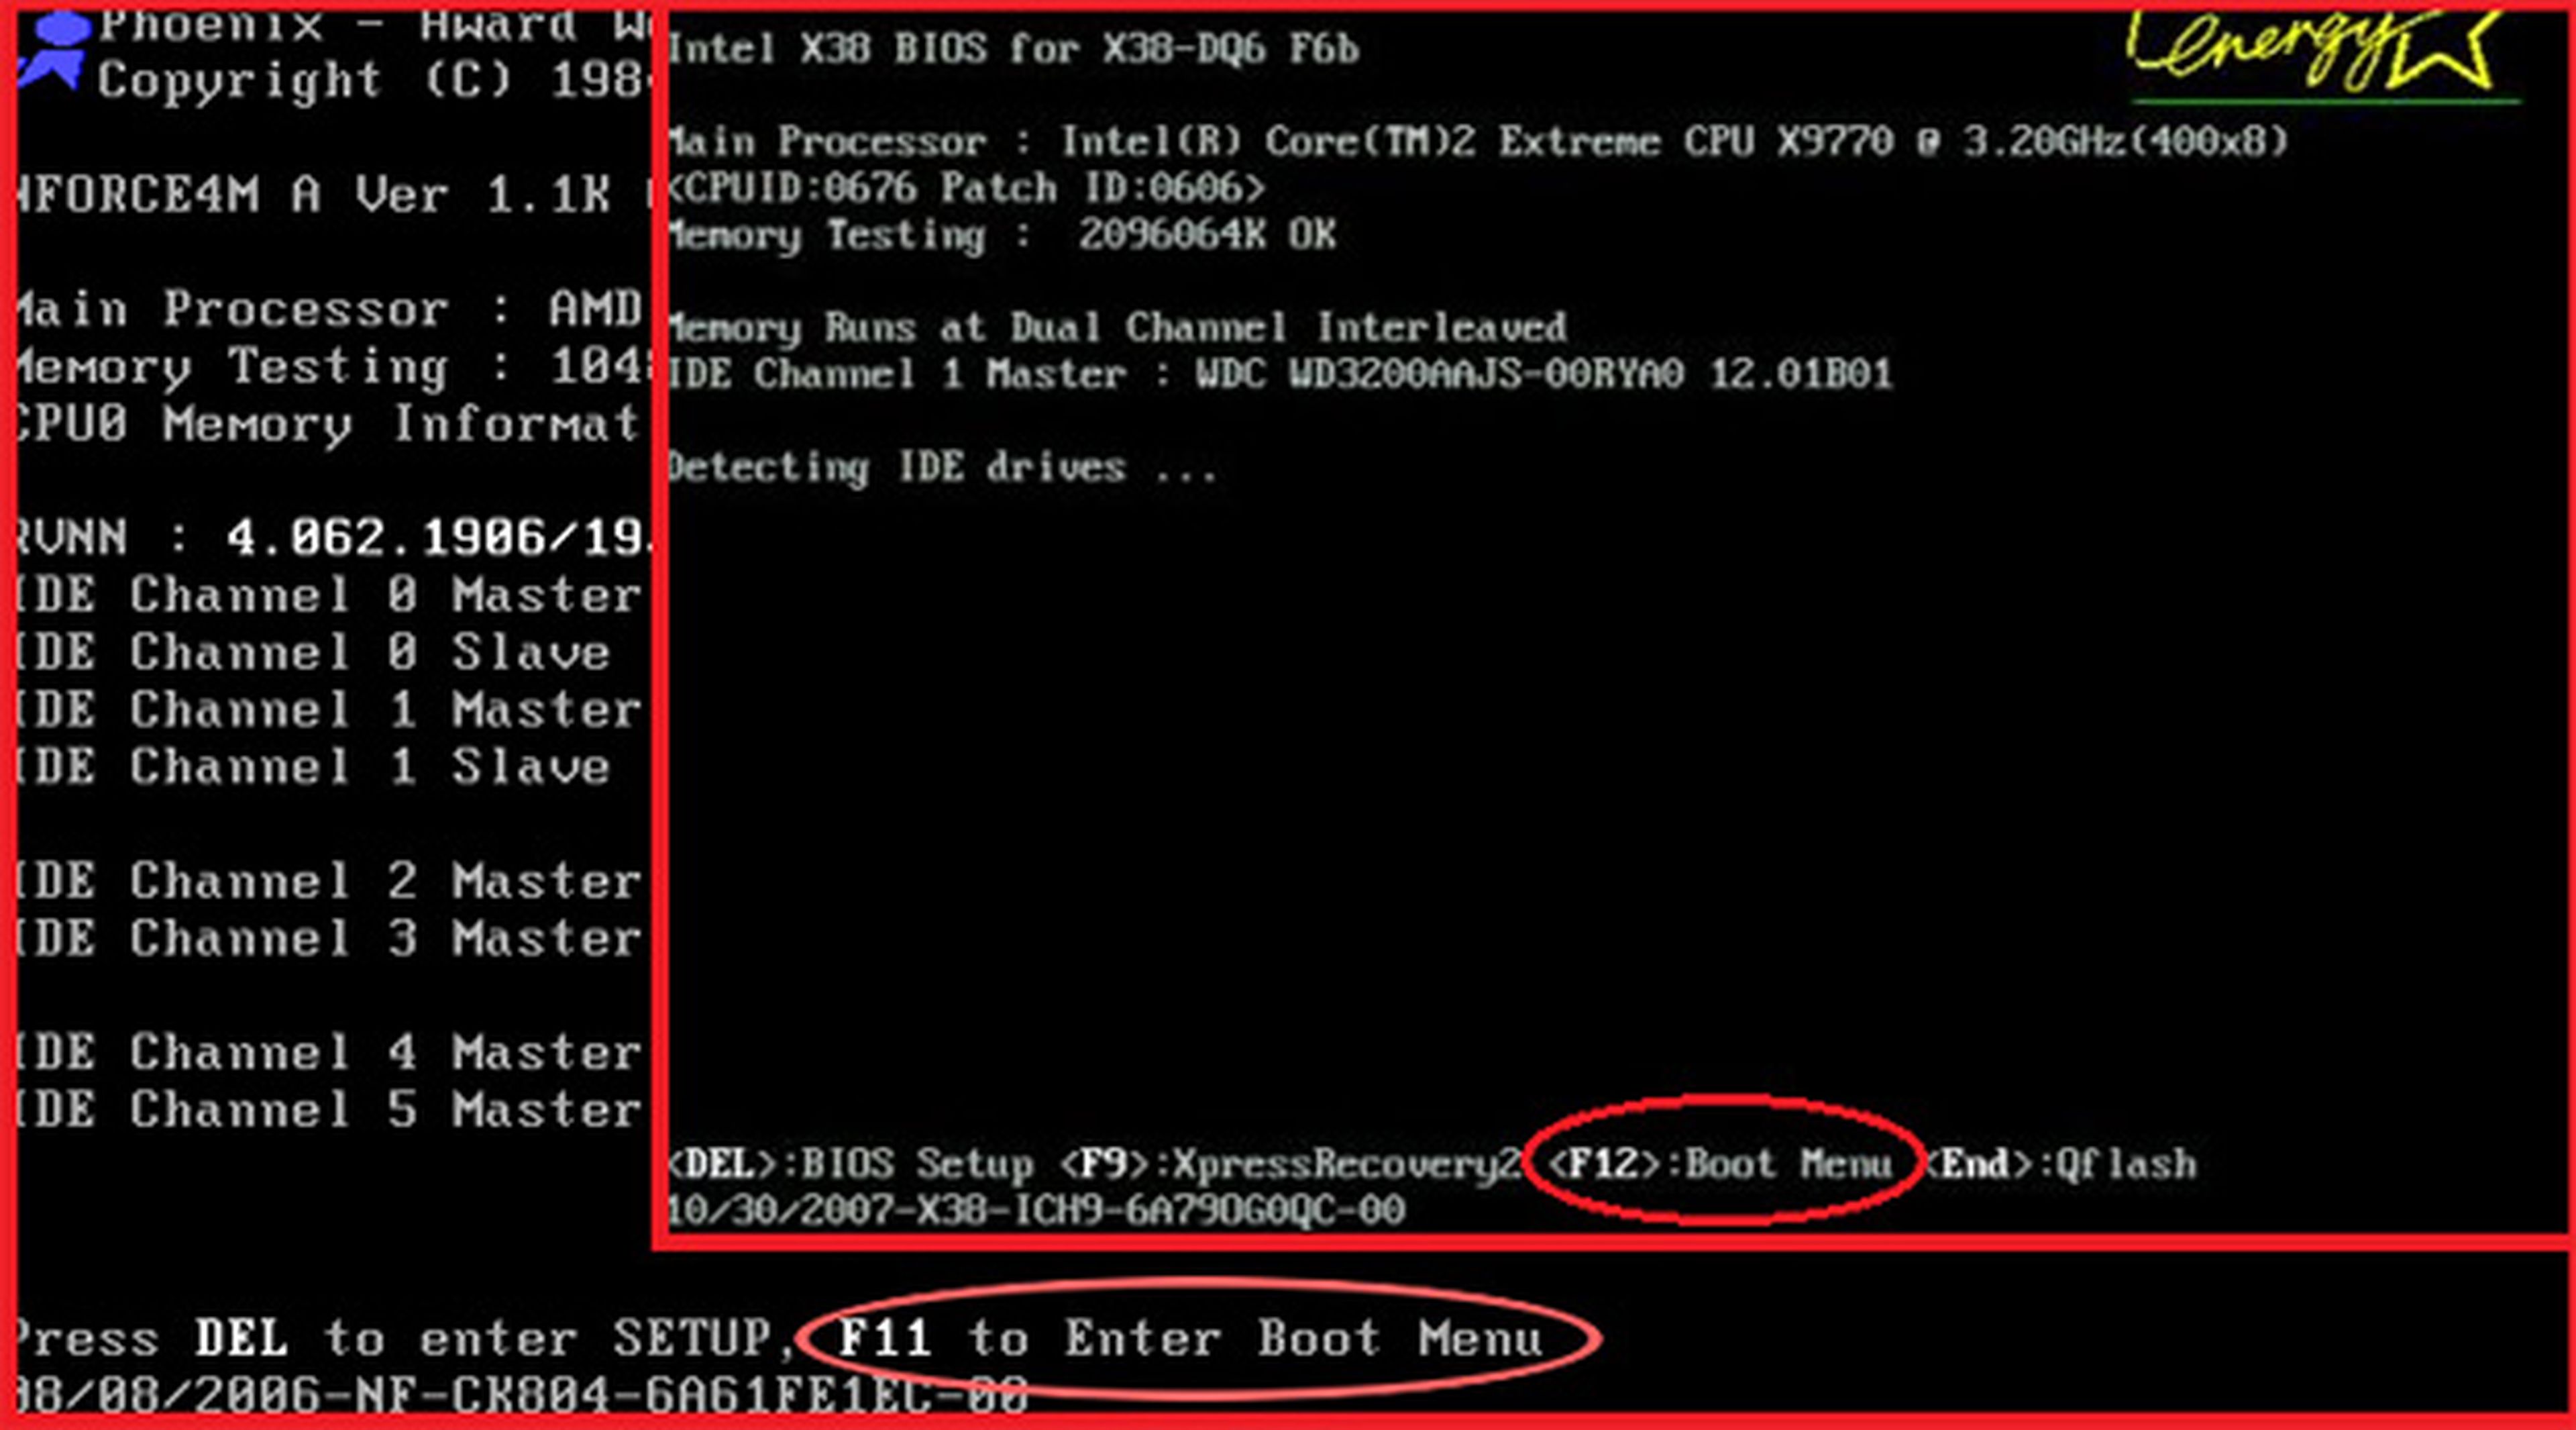 Acceder al Boot Menu de la BIOS